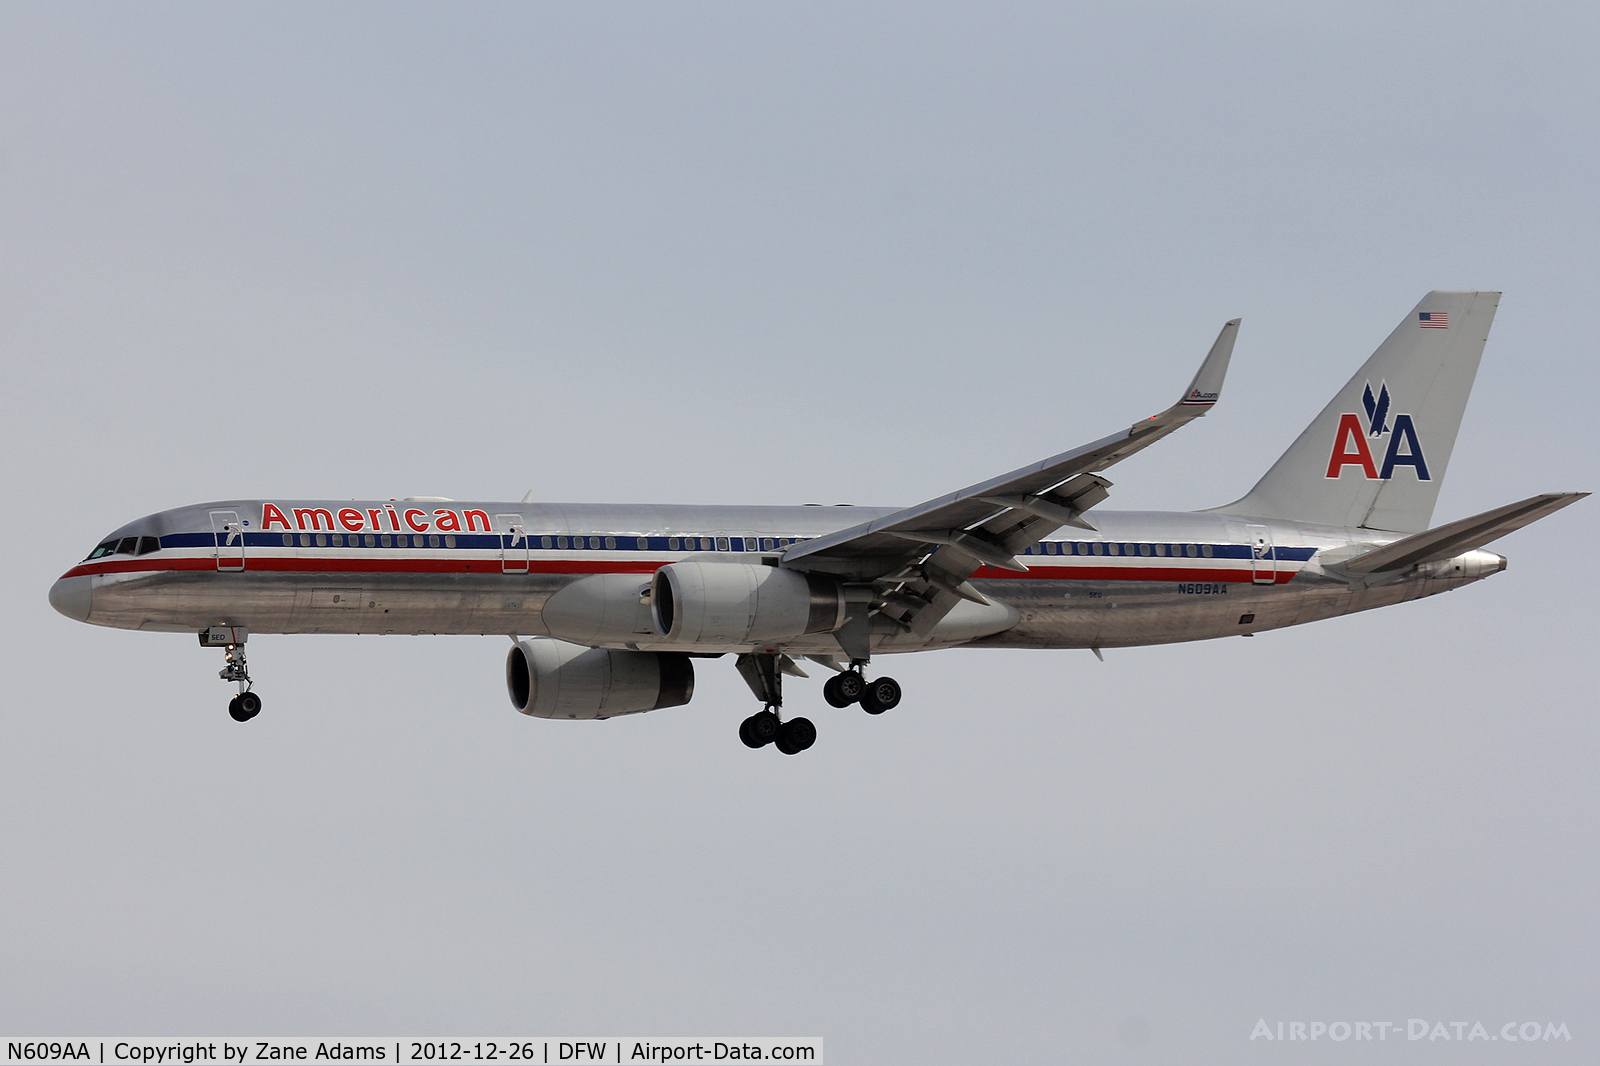 N609AA, 1996 Boeing 757-223 C/N 27447, American Airlines at DFW Airport.